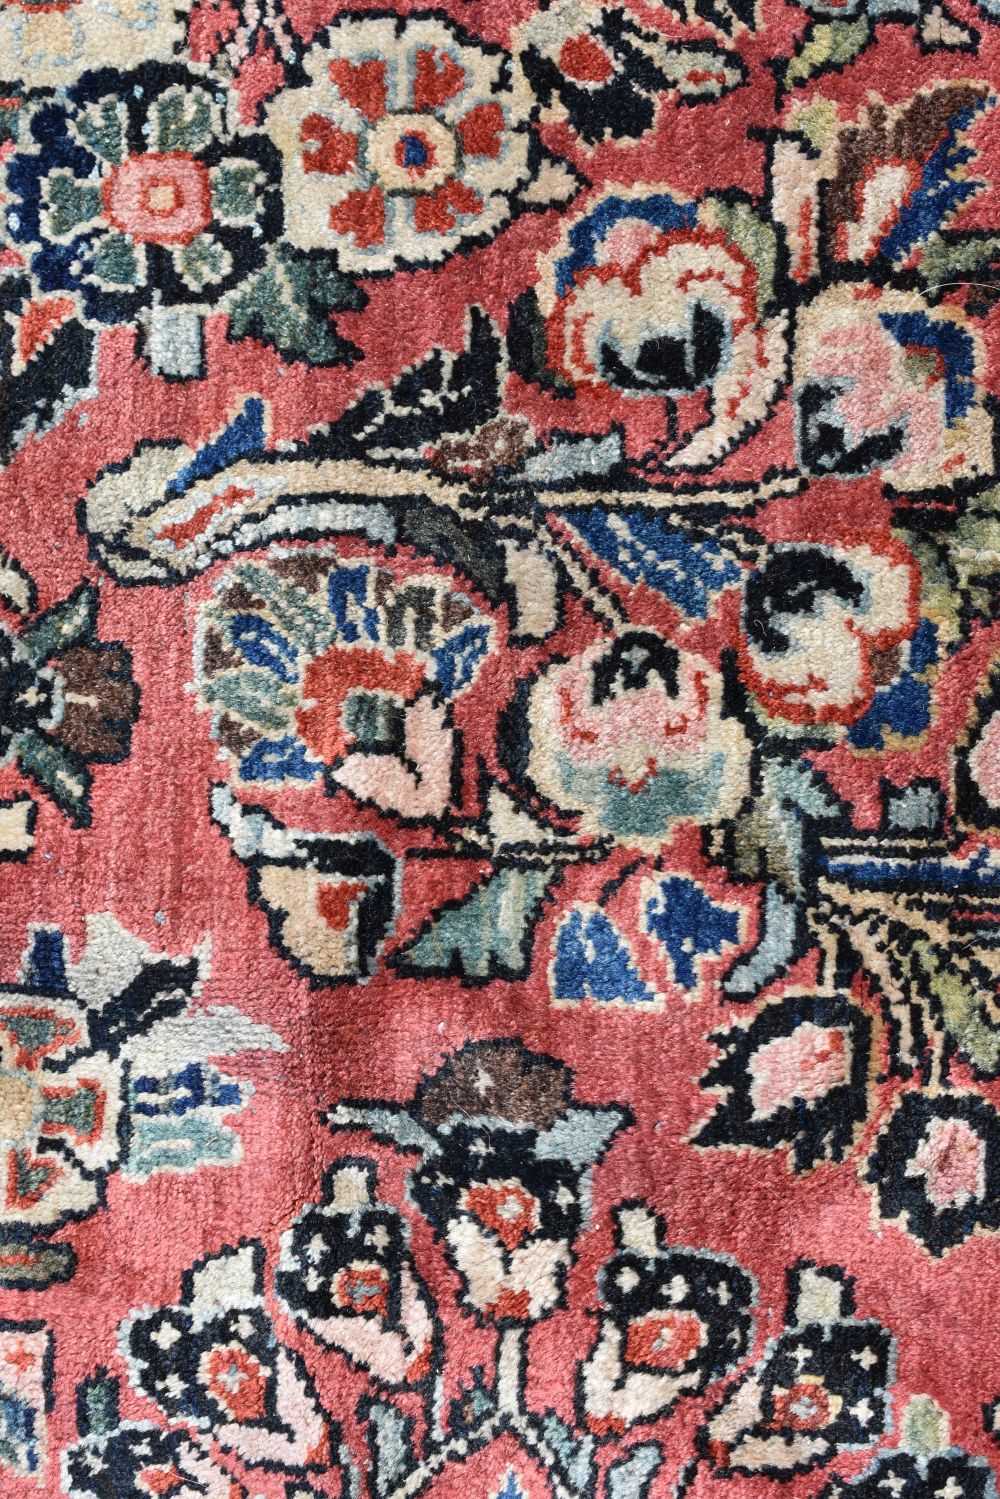 A Persian Sarouk rug 367 x 267 cm - Image 9 of 18